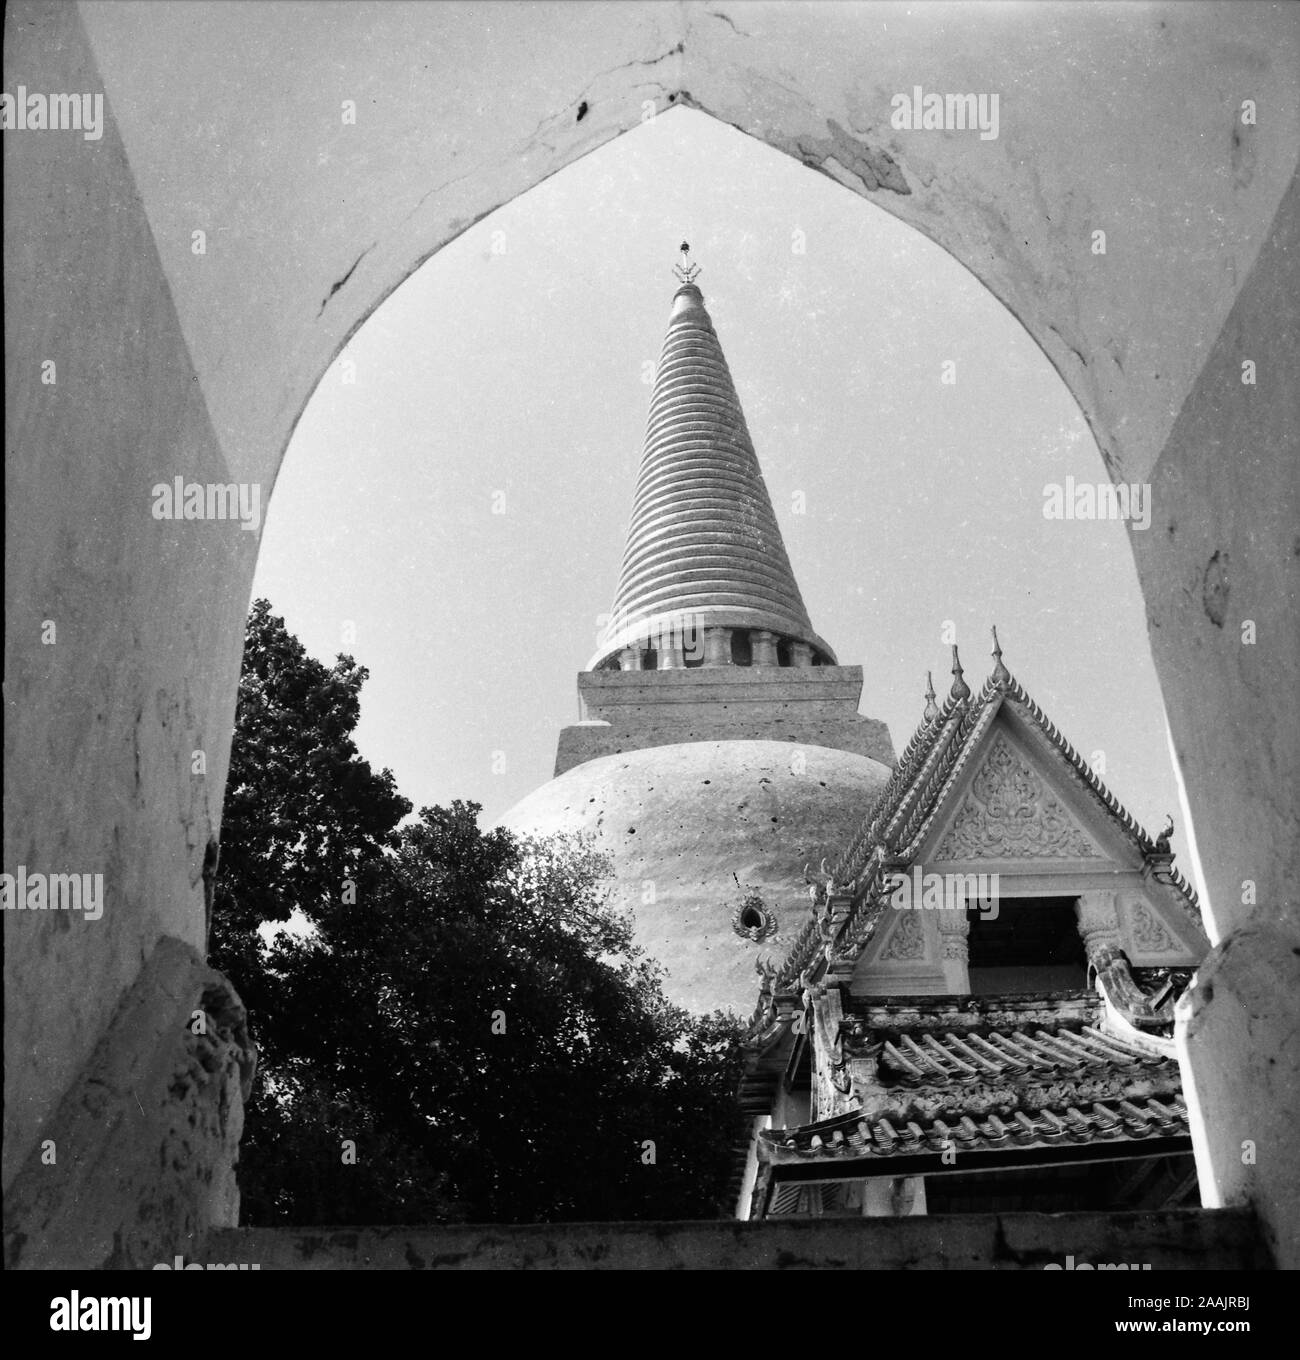 Vieilles photos montrant l'être des individus dans la province de Nakhon Pathom, Thaïlande, au Temple Phra Pathom Chedi. Cet ensemble d'images a été prise le 2 janvier 1948. Banque D'Images